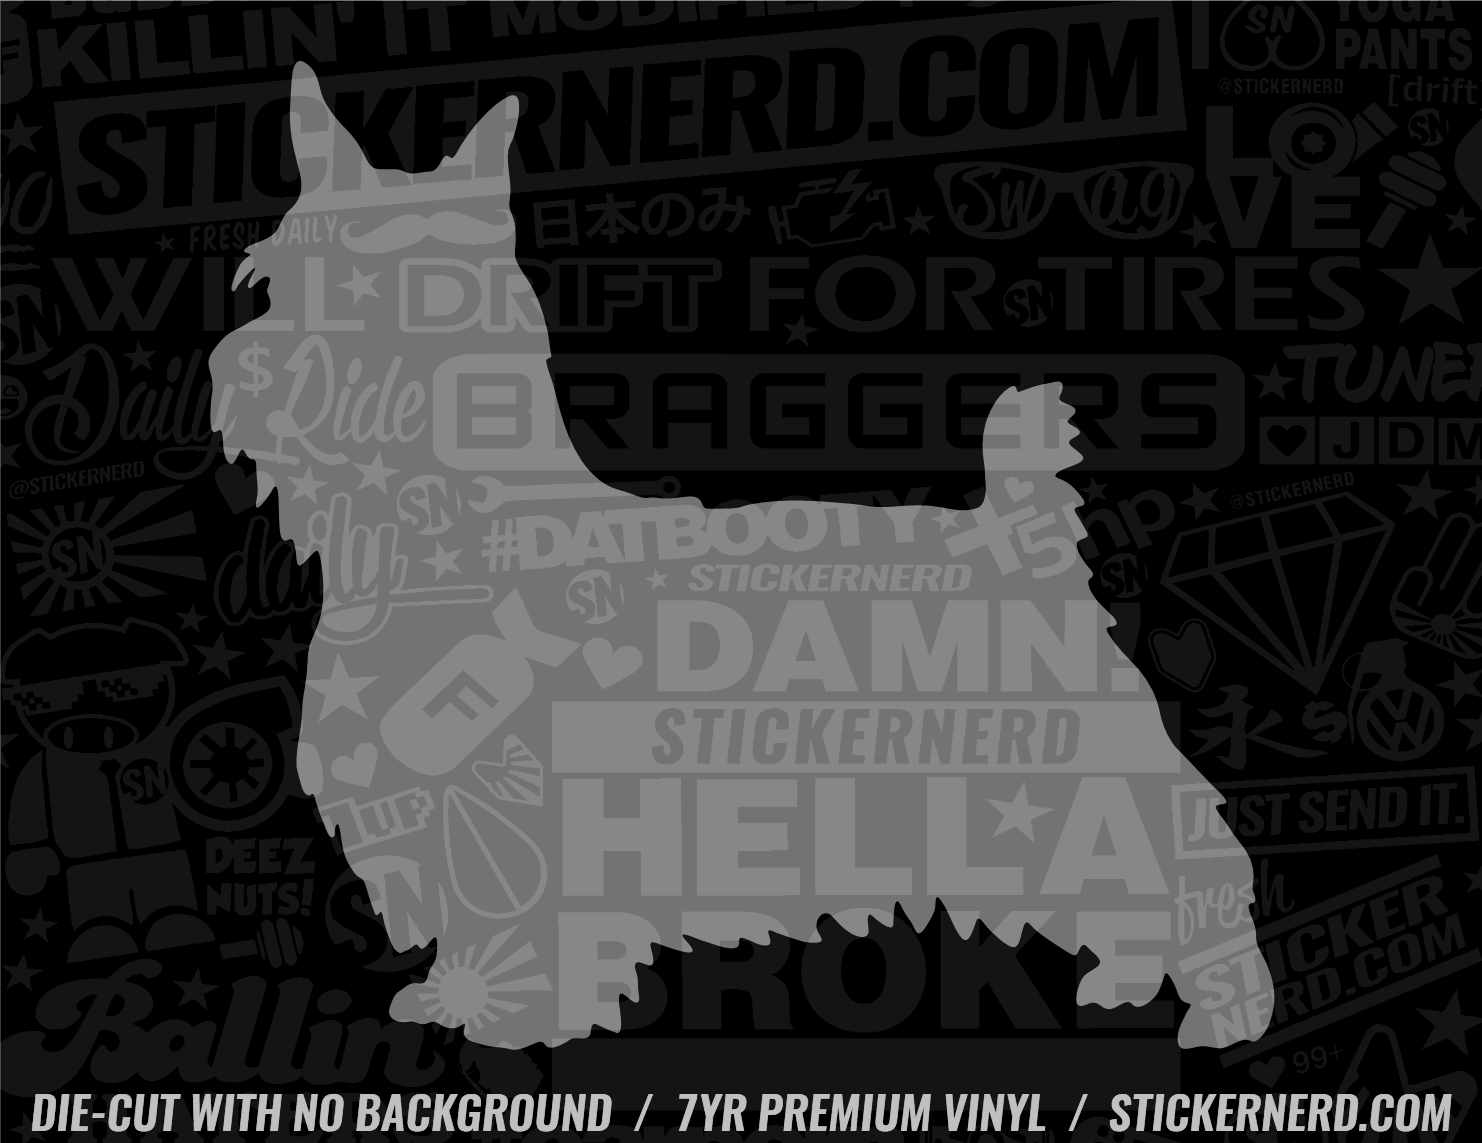 Silky Terrier Dog Sticker - Window Decal - STICKERNERD.COM